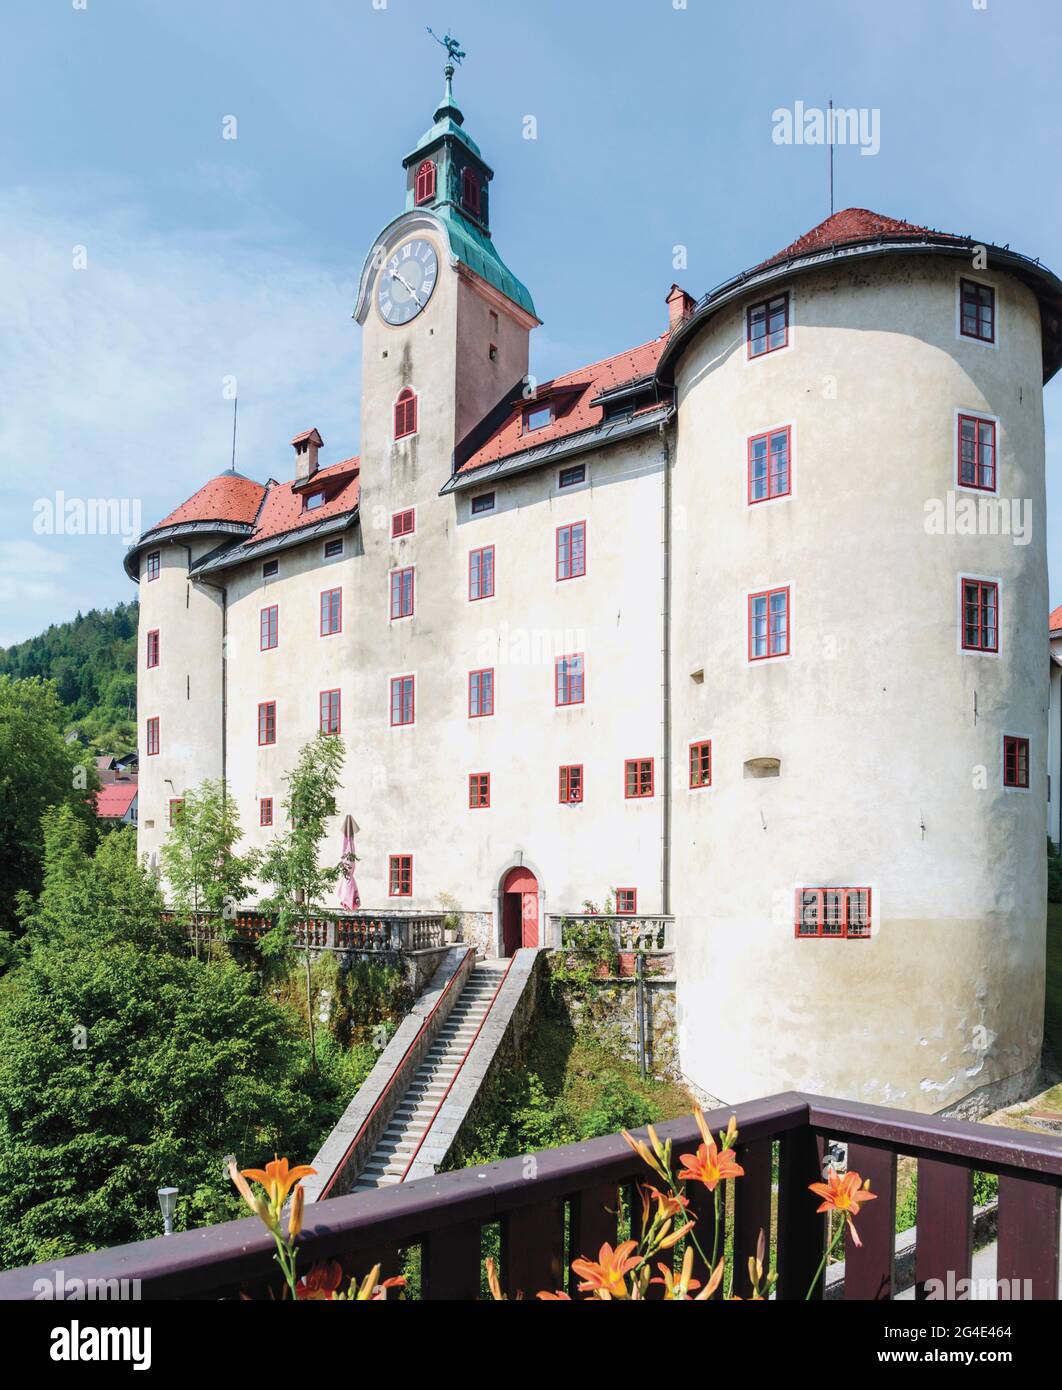 Idrija, Litorale sloveno, Slovenia. Gewerkenegg castello. Il castello ospita il museo della città che comprende la storia dell'estrazione del mercurio a Idrija. Foto Stock